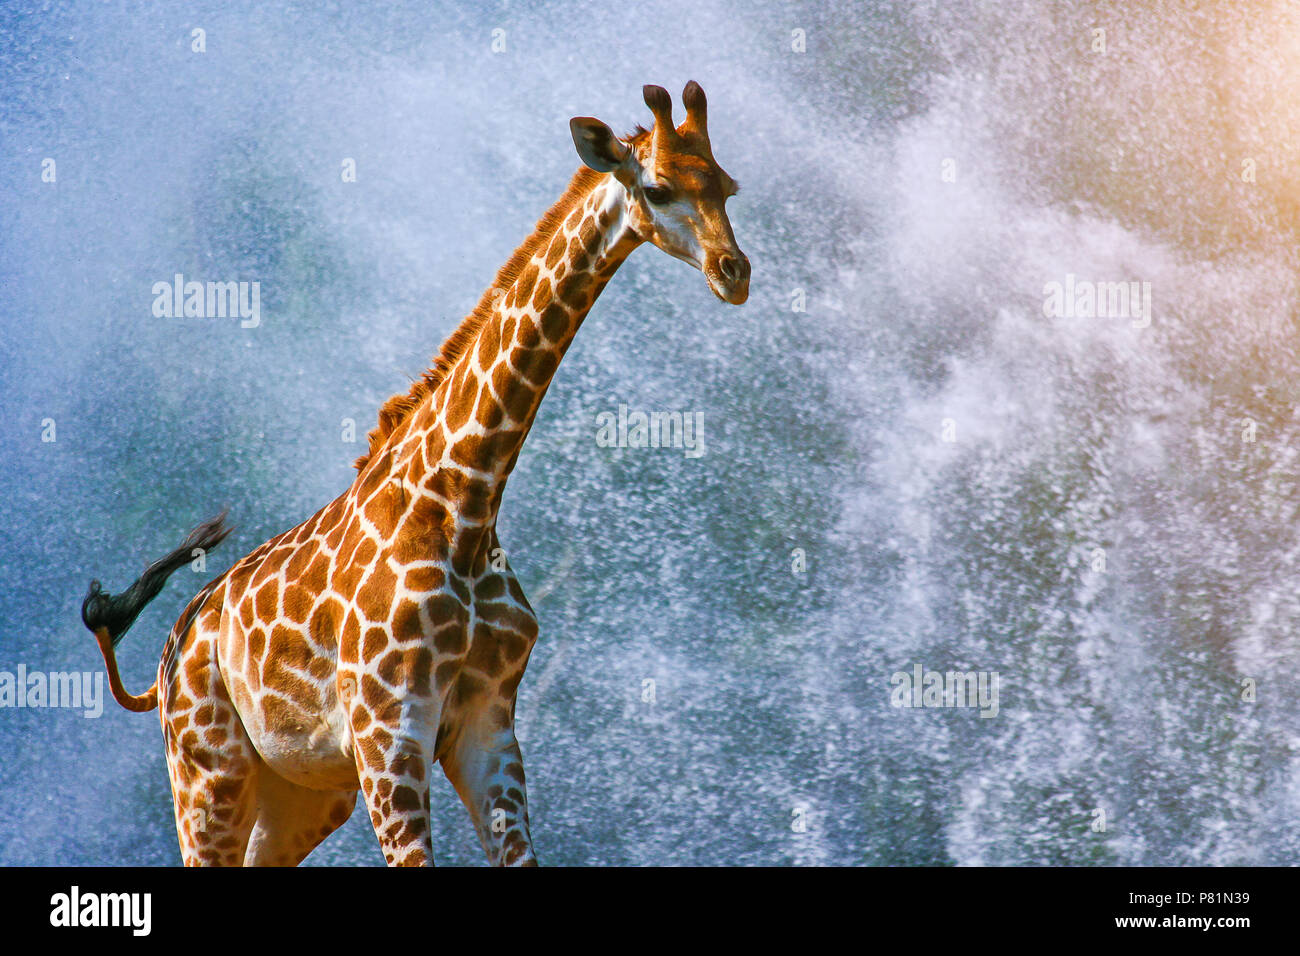 Eine Giraffe auf Spritzwasser Hintergrund Stockfoto